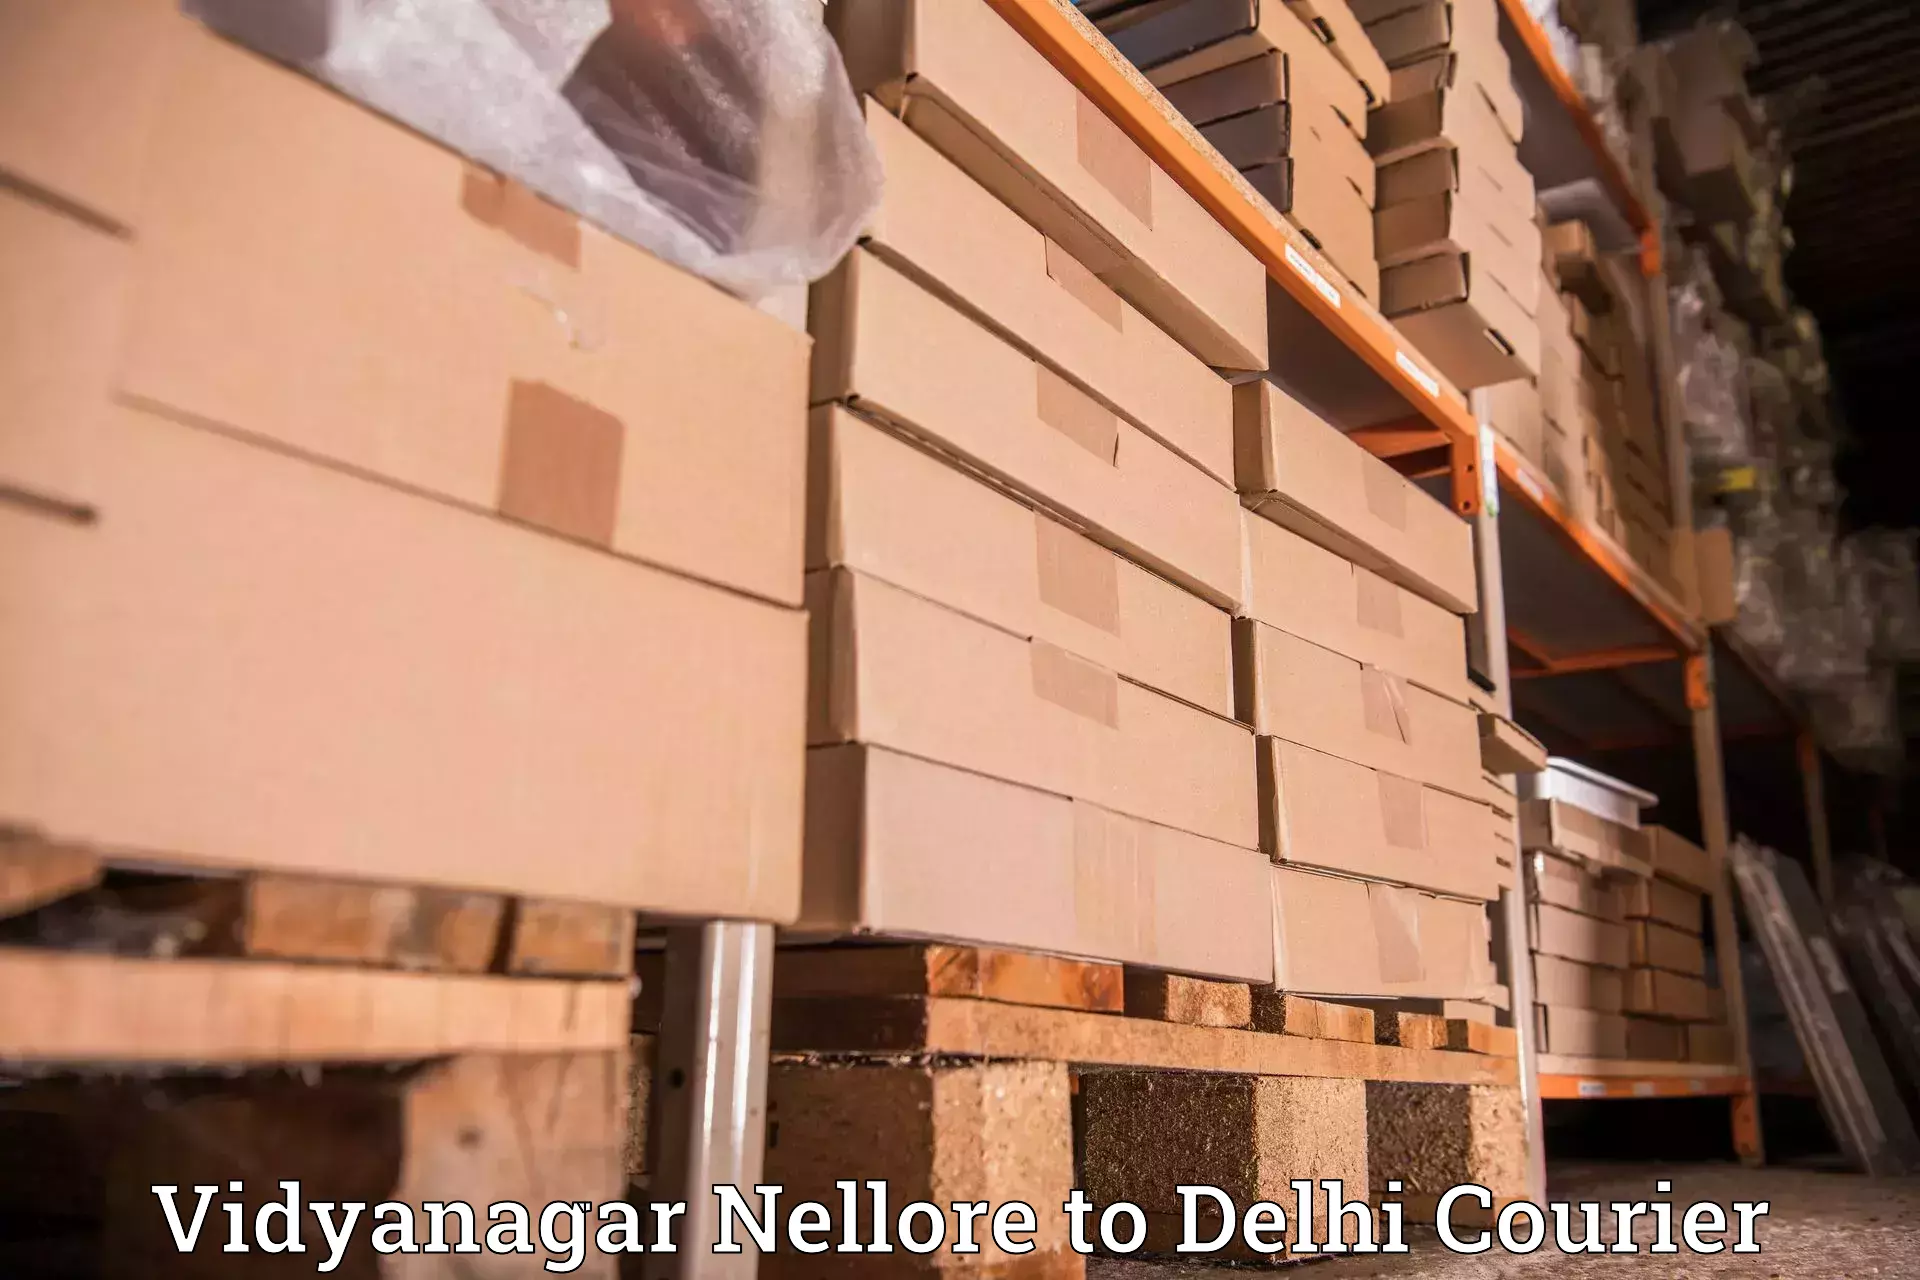 Courier service innovation Vidyanagar Nellore to Subhash Nagar